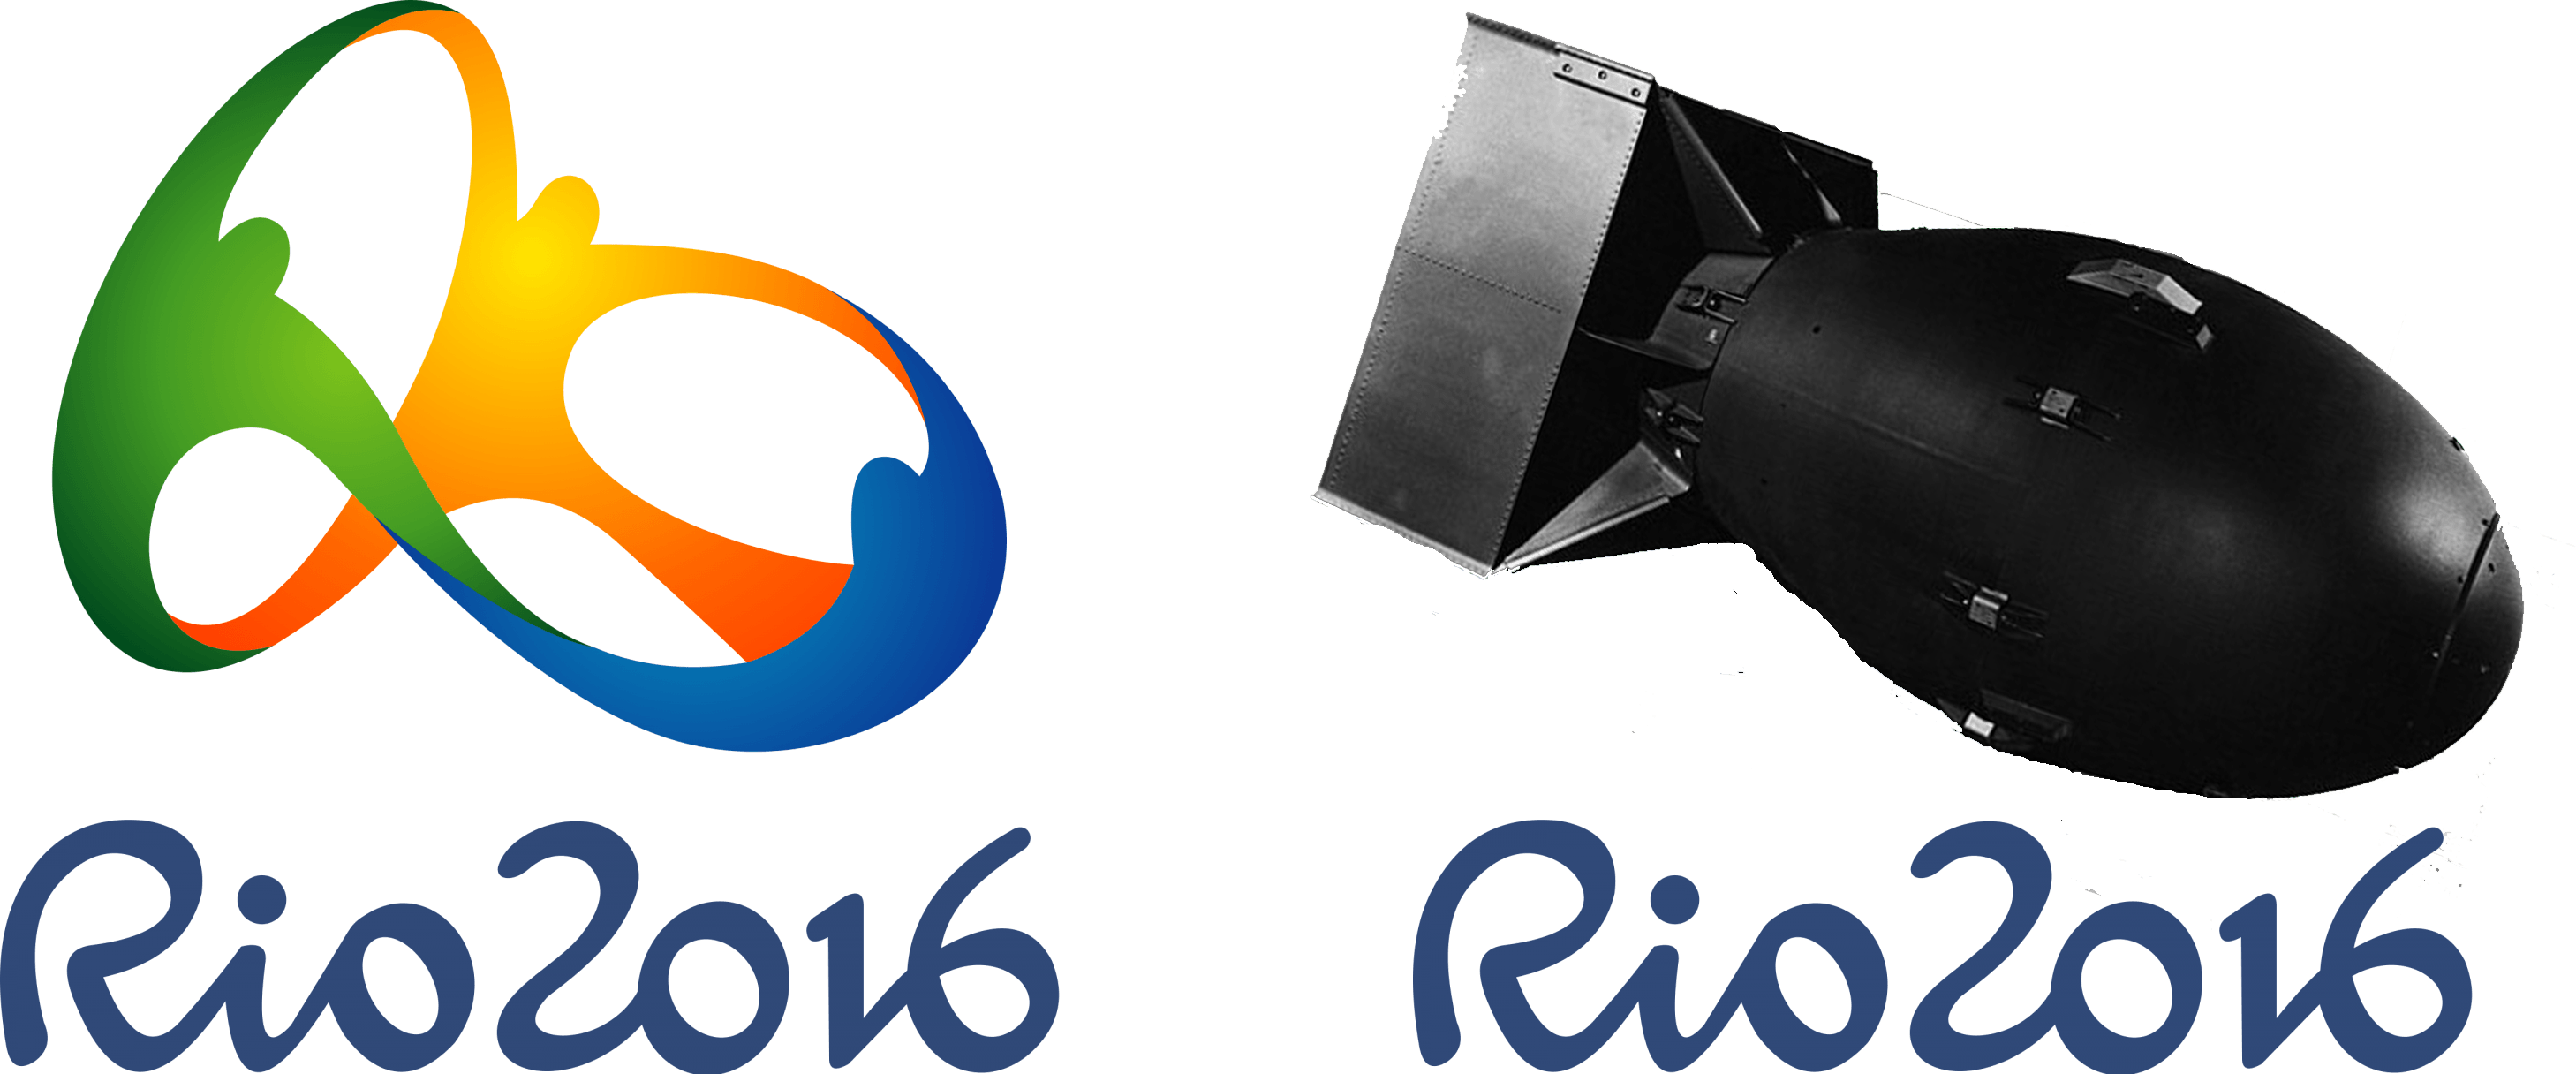 Rio 2016 Logo - More Accurate Rio 2016 Logo : apocalympics2016